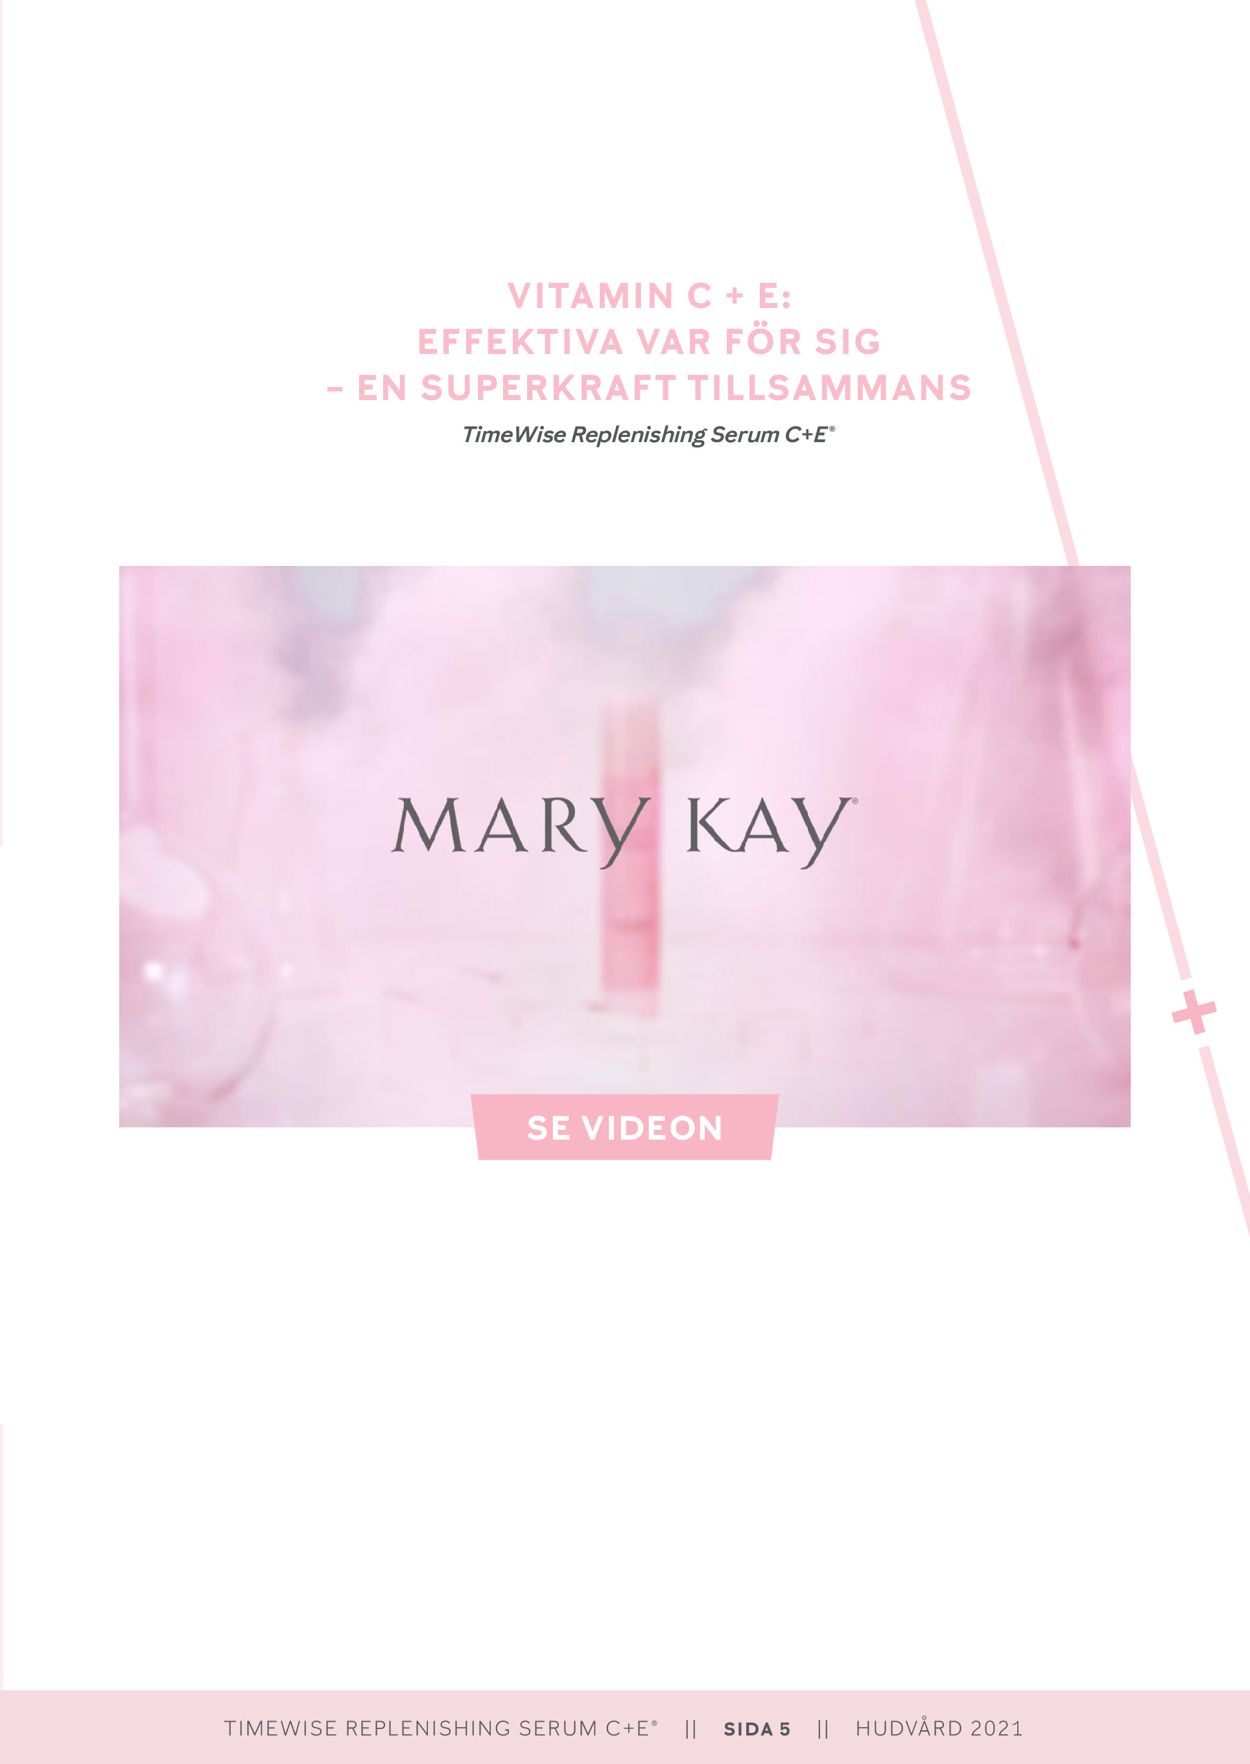 Mary Kay - Reklamblad - 09/12-31/01-2021 (Sida 5)